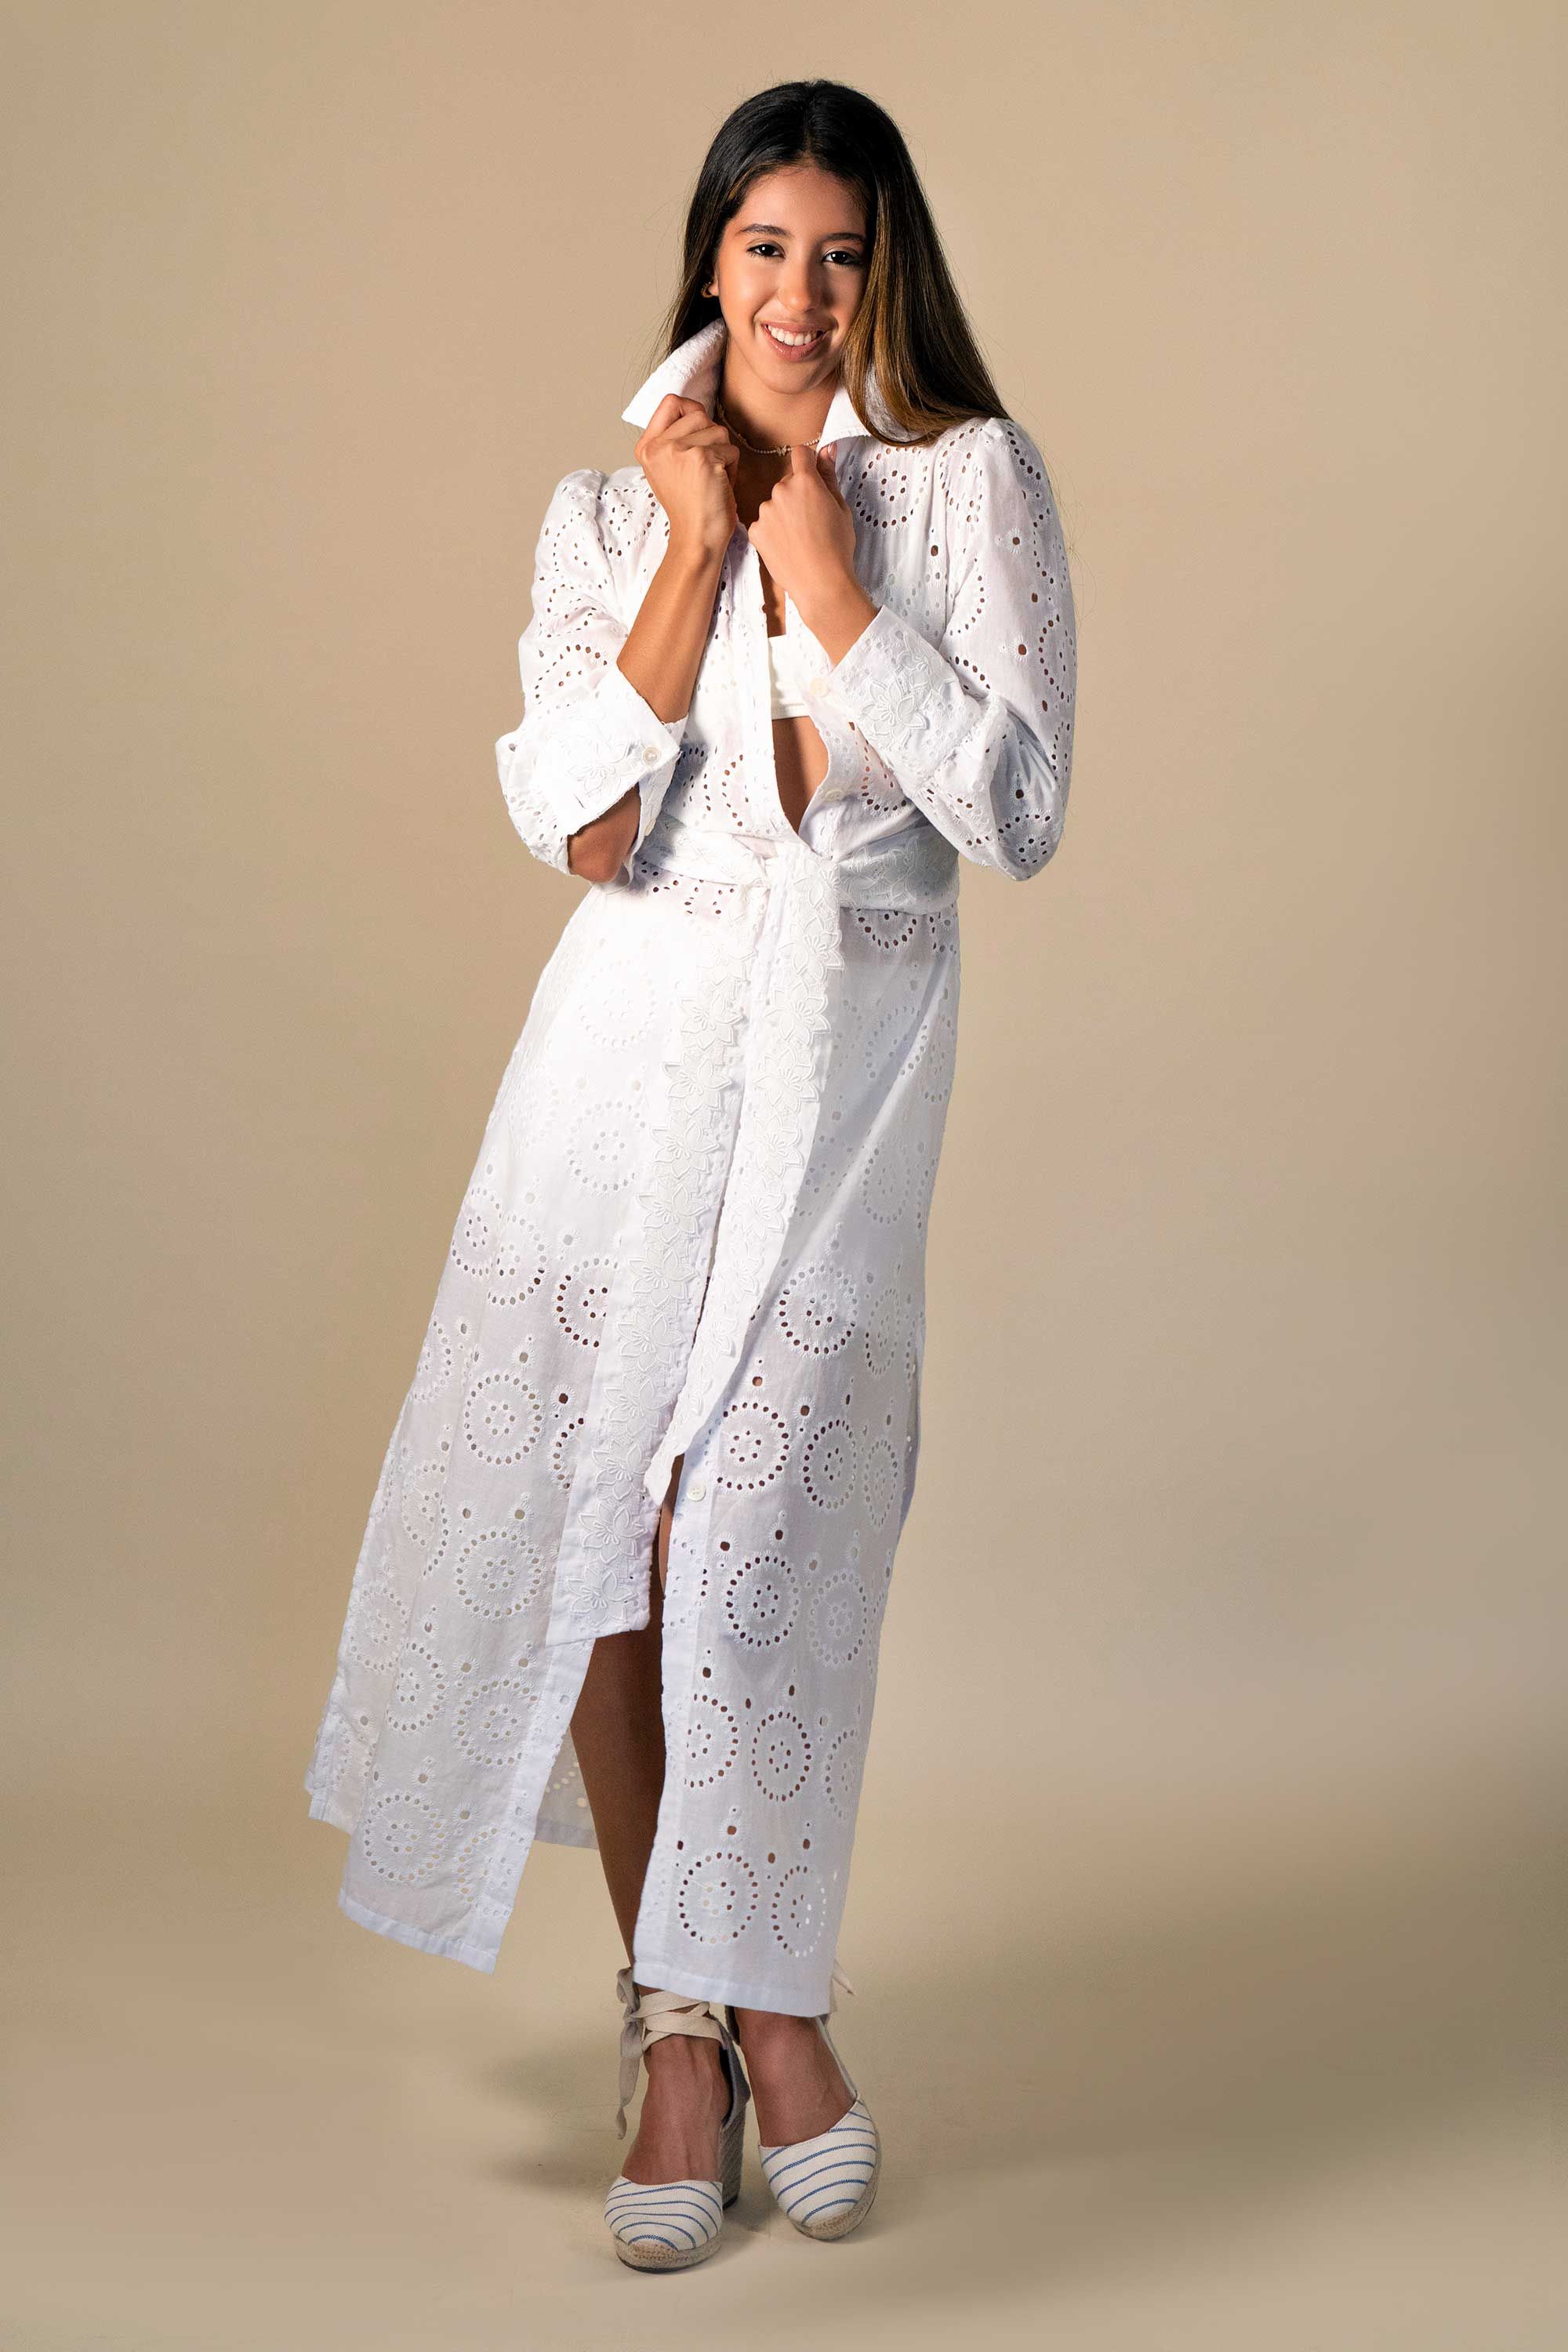 Angela Horton Women's Top Sz L Palm Beach Dress White